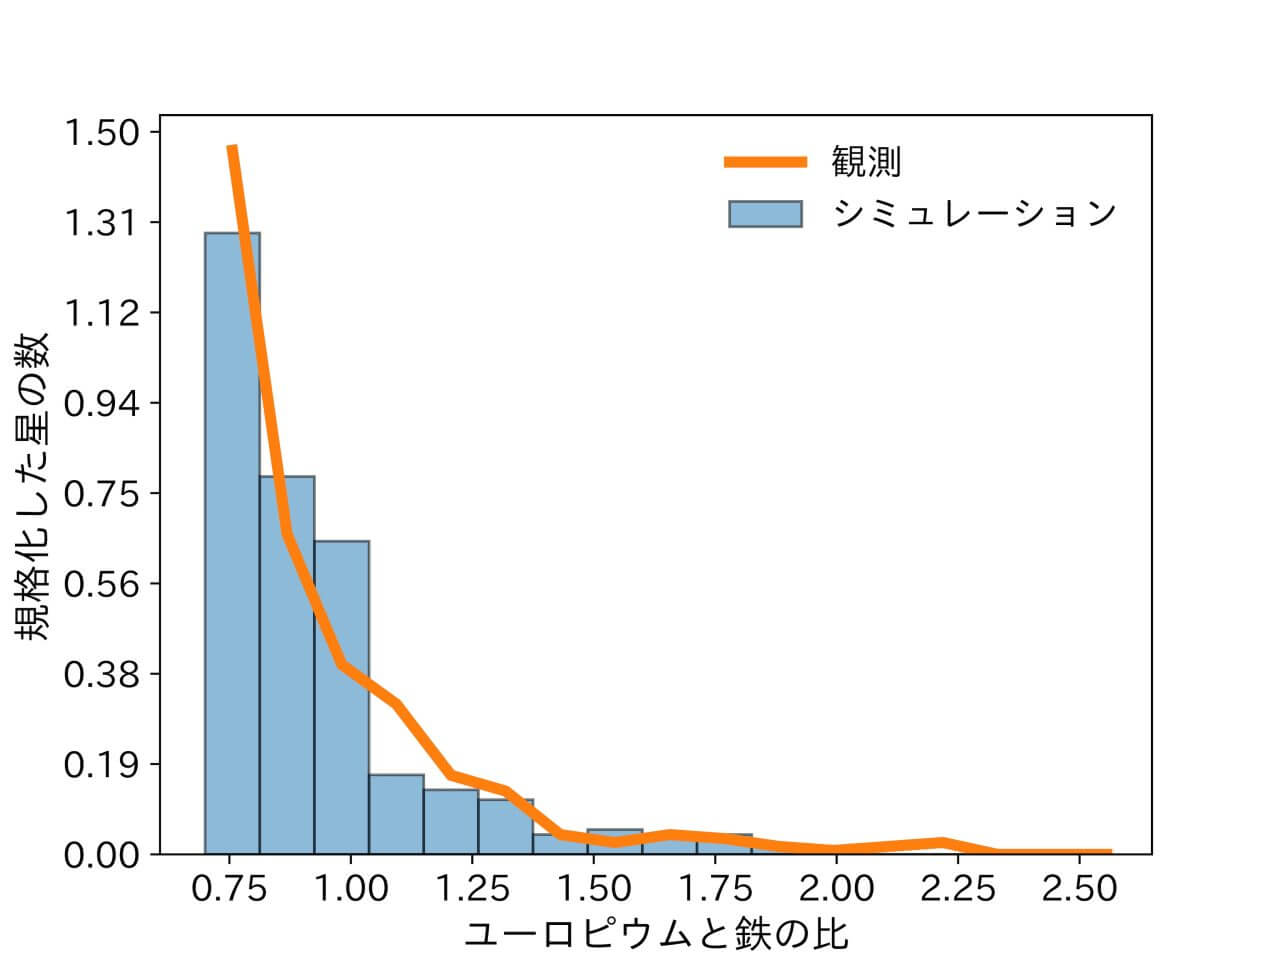 [▲ مقارنة توزيع أيام اليوروبيوم (Eu) والحديد (Fe) بين محاكاة تكوين مجرة ​​درب التبانة (باللون الأزرق) والملاحظة الفعلية (باللون البرتقالي) (Credit: Yutaka Hirai et al.)]